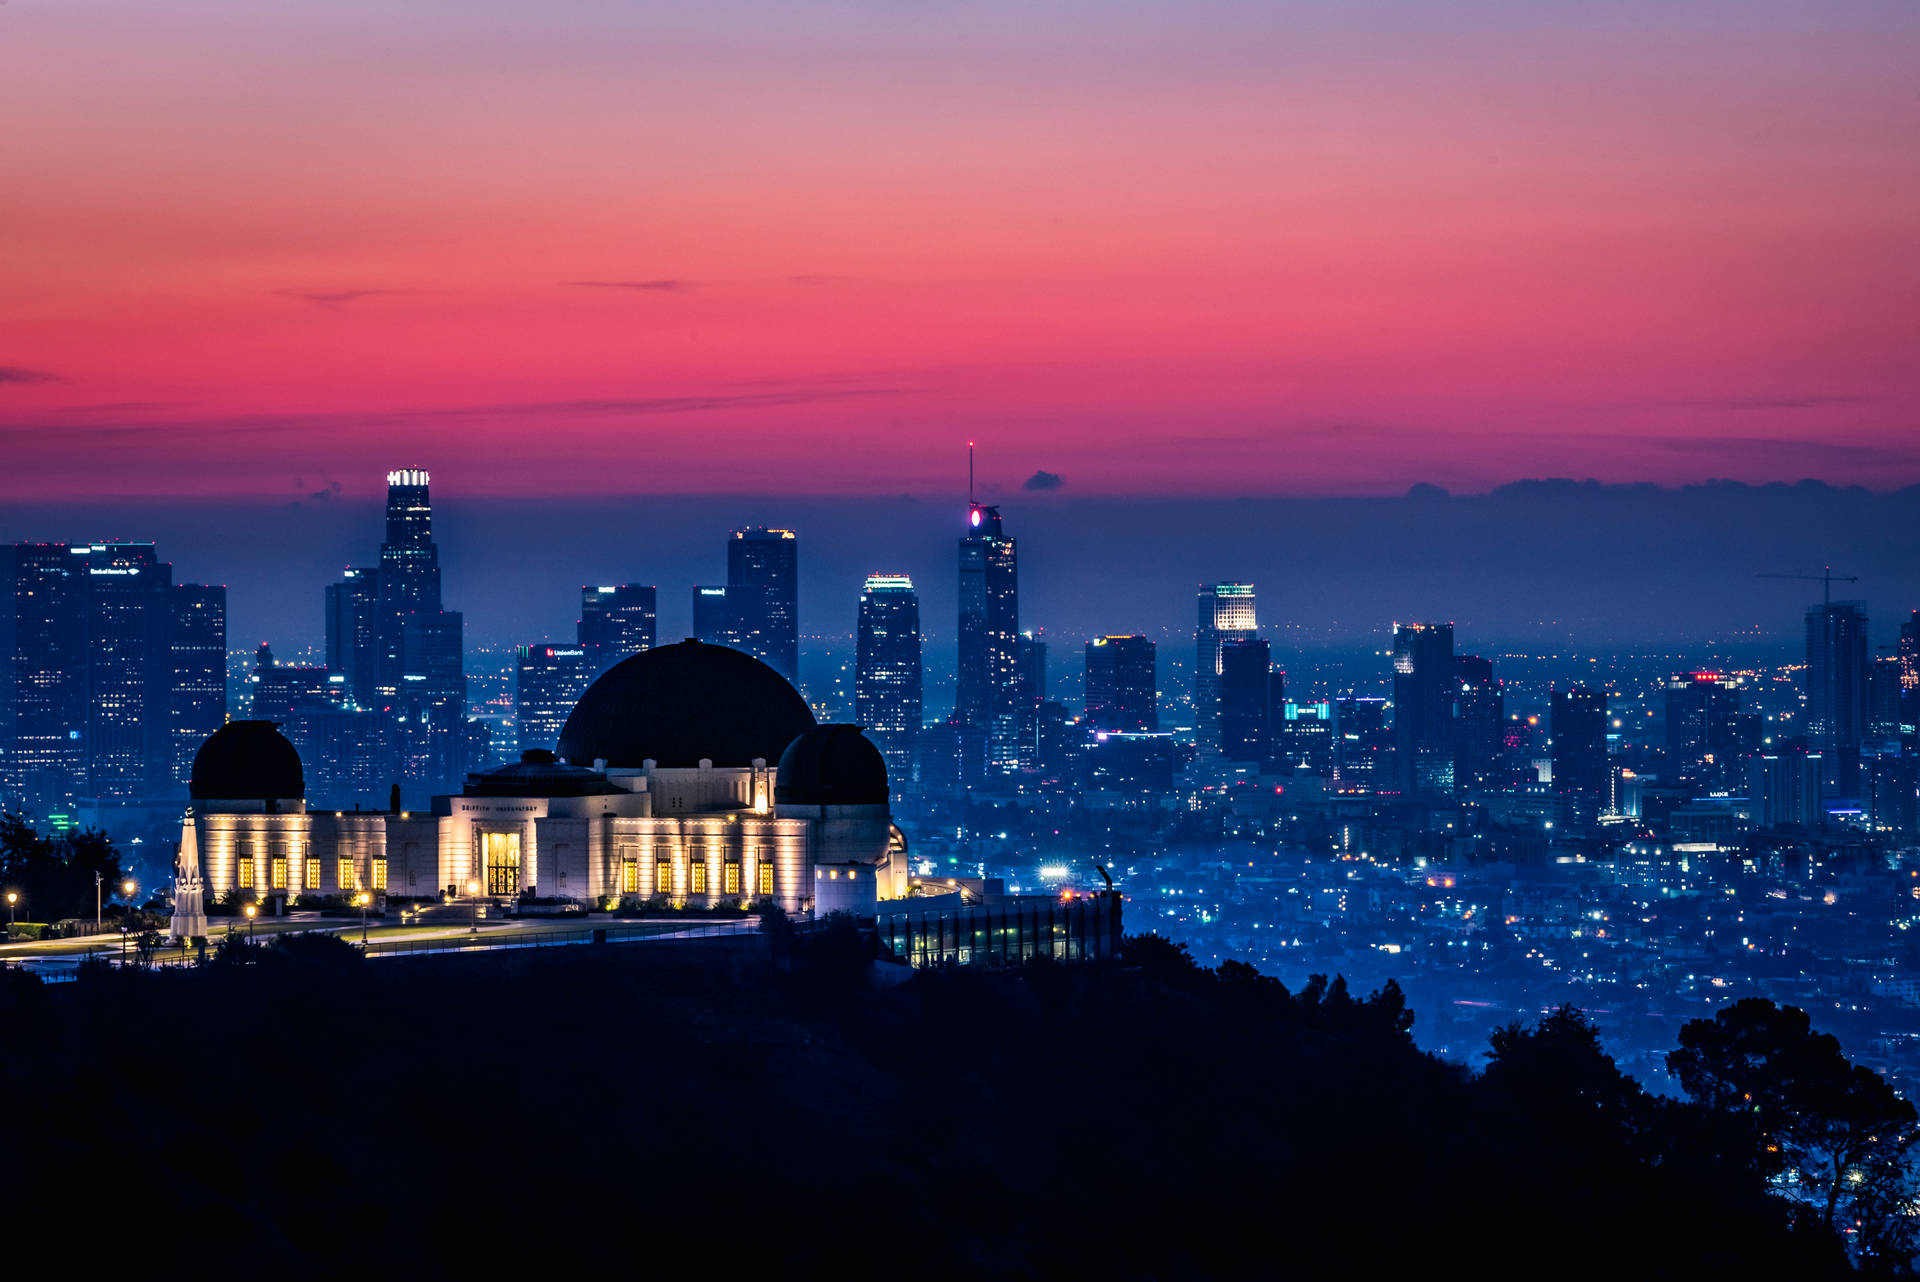 Hình nền hoàng hôn Los Angeles miễn phí sẽ khiến cho điện thoại của bạn trở nên độc đáo và thu hút. Mọi thứ sẽ trở nên tươi mới và độc đáo hơn khiến bạn thật sự hài lòng. Hãy tải hình nền sunset miễn phí và thưởng thức điều đó!